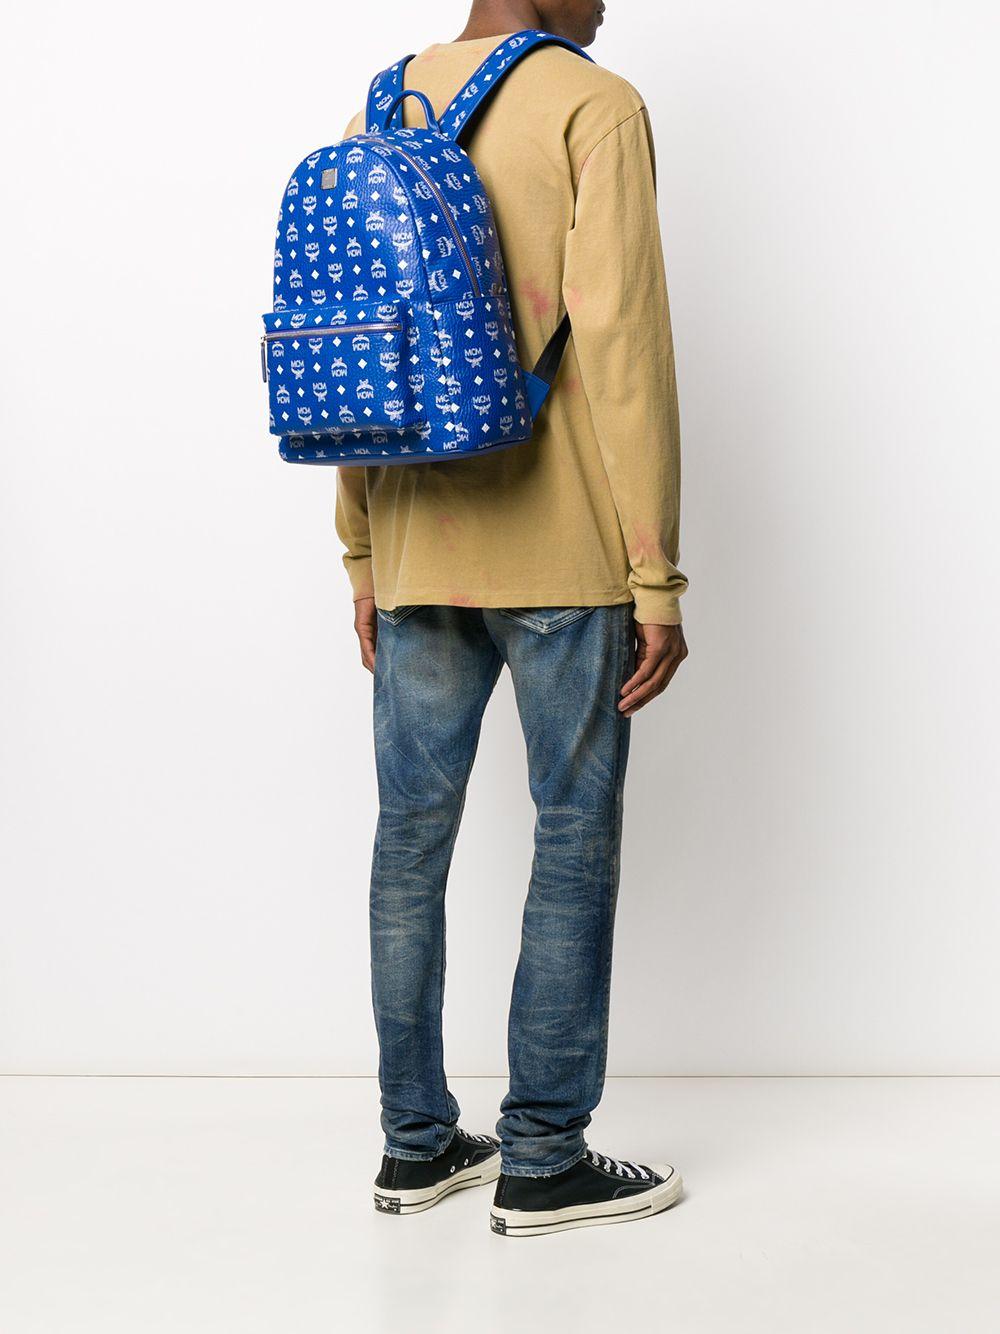 MCM Blue Men's Backpack for sale